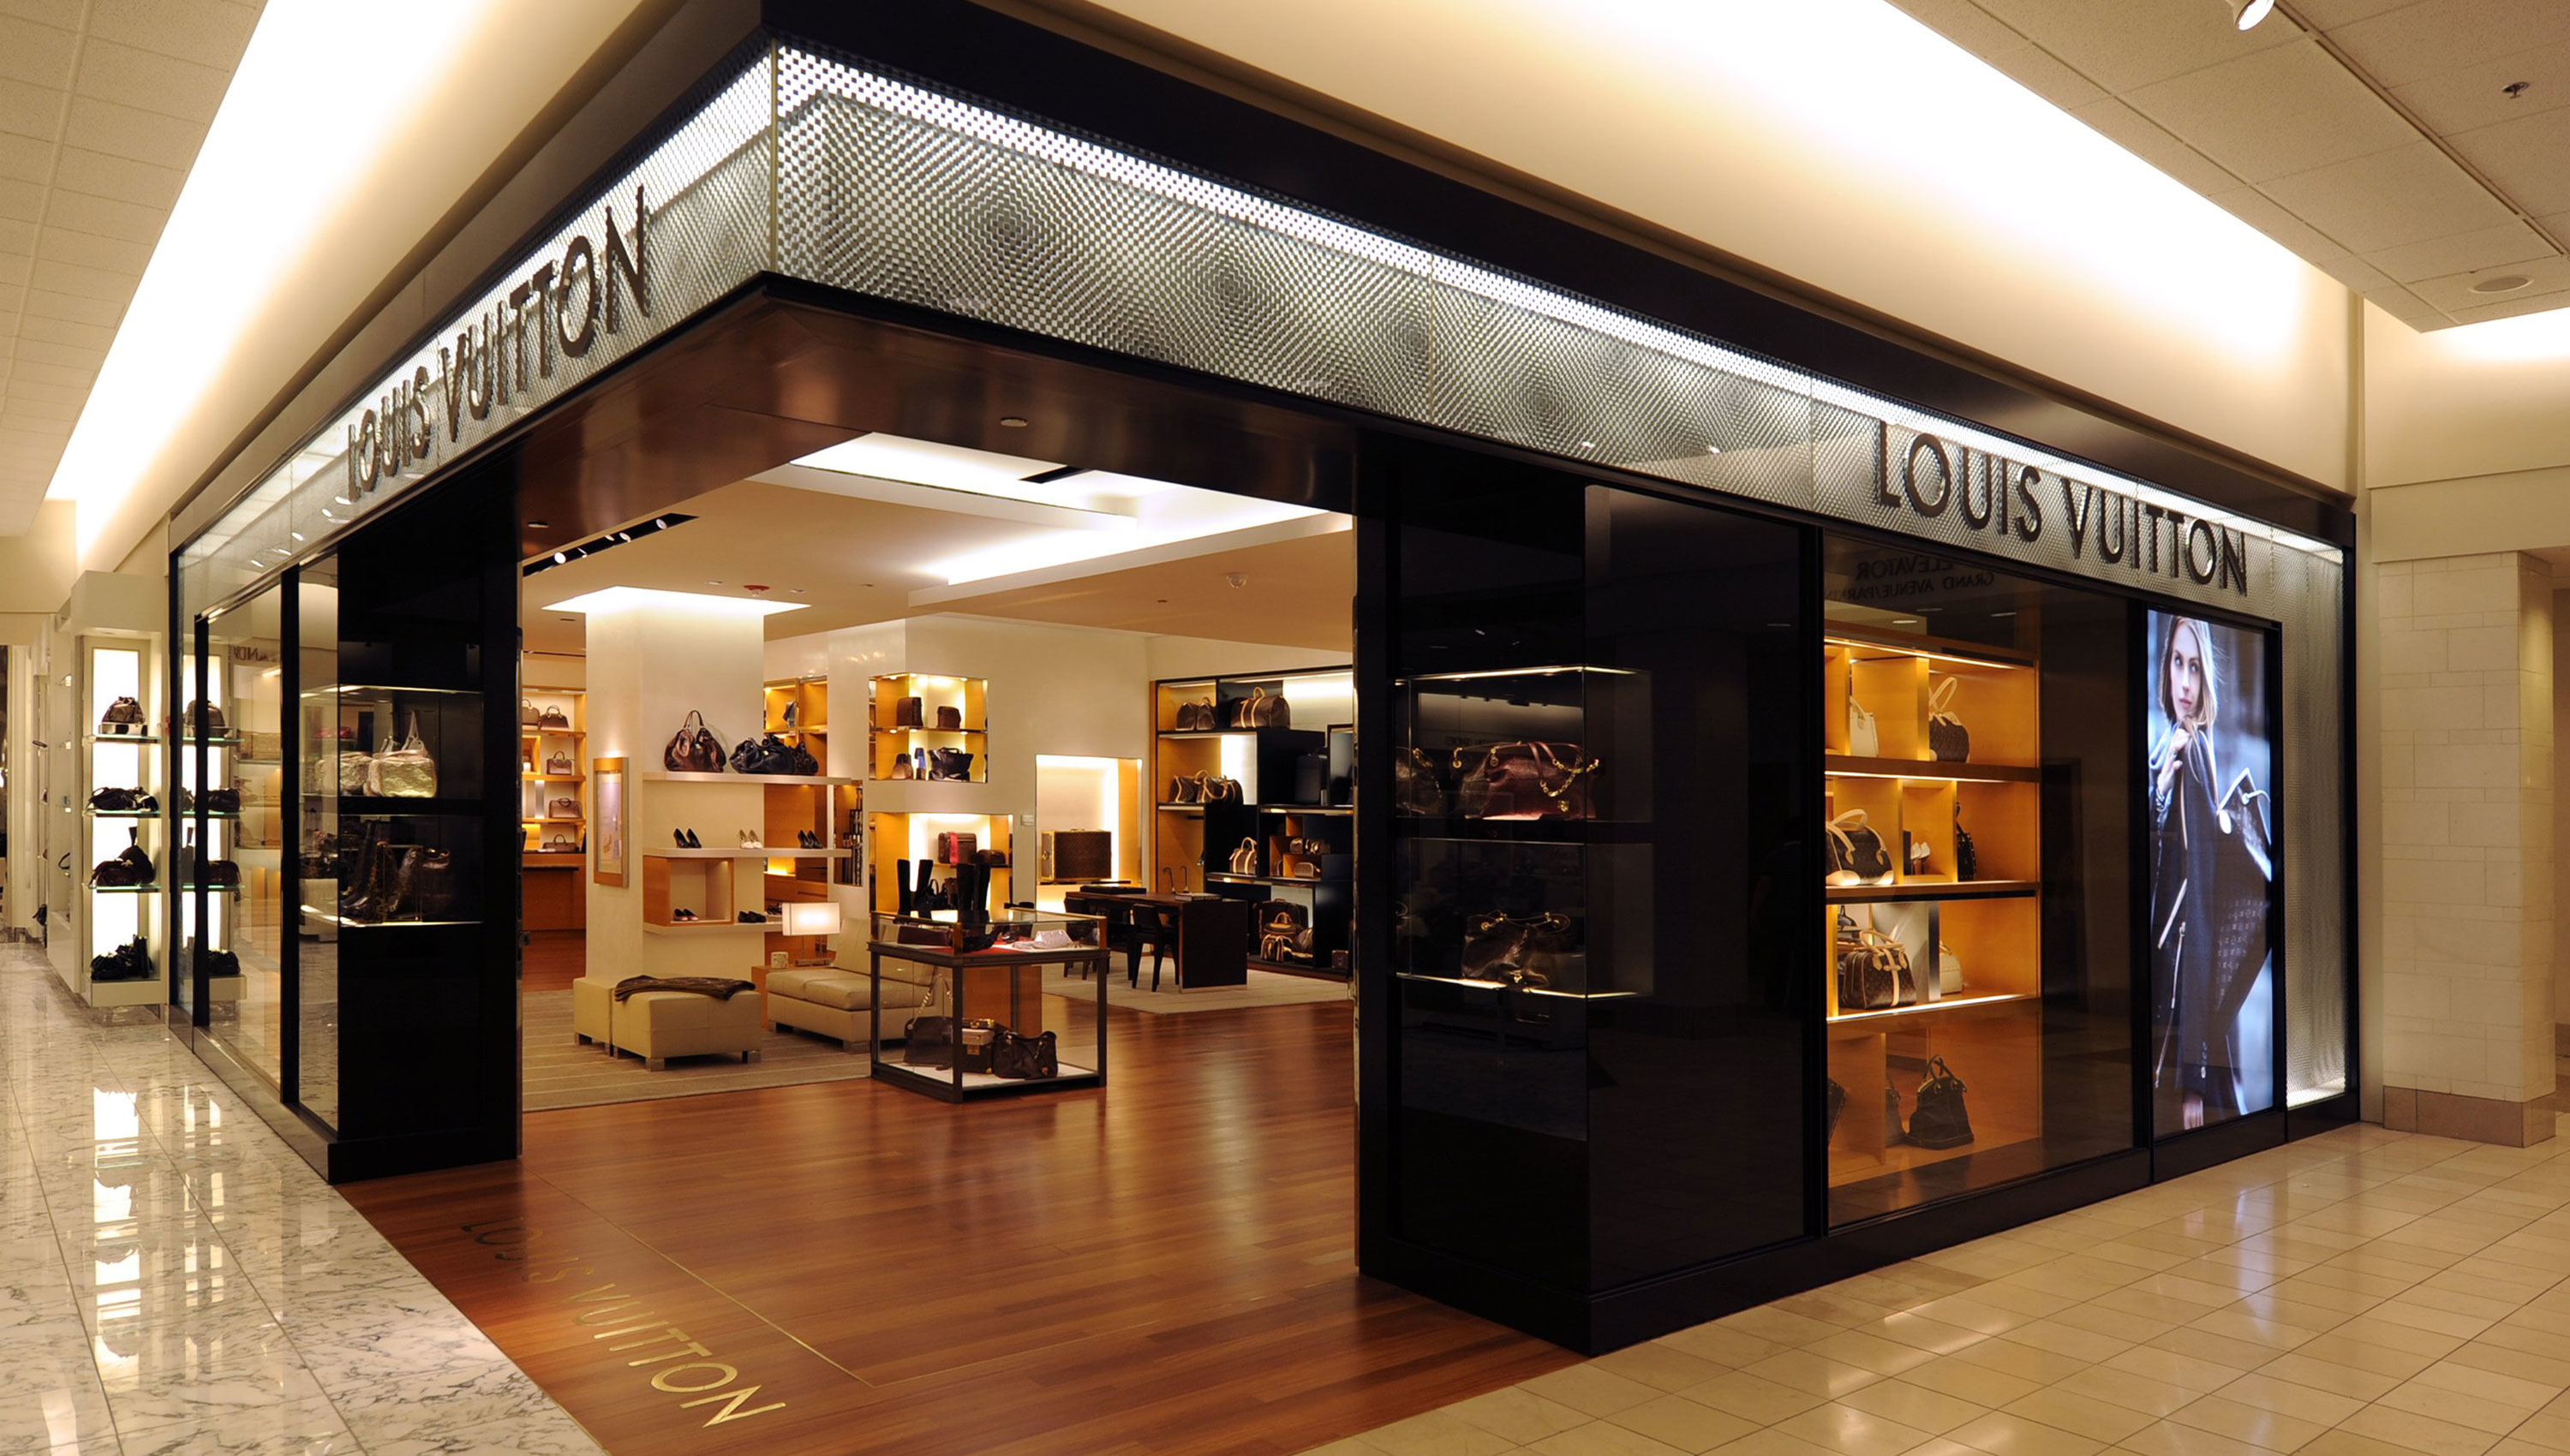 Louis Vuitton Nordstrom Chicago, Chicago Illinois (IL) - www.bagssaleusa.com/louis-vuitton/